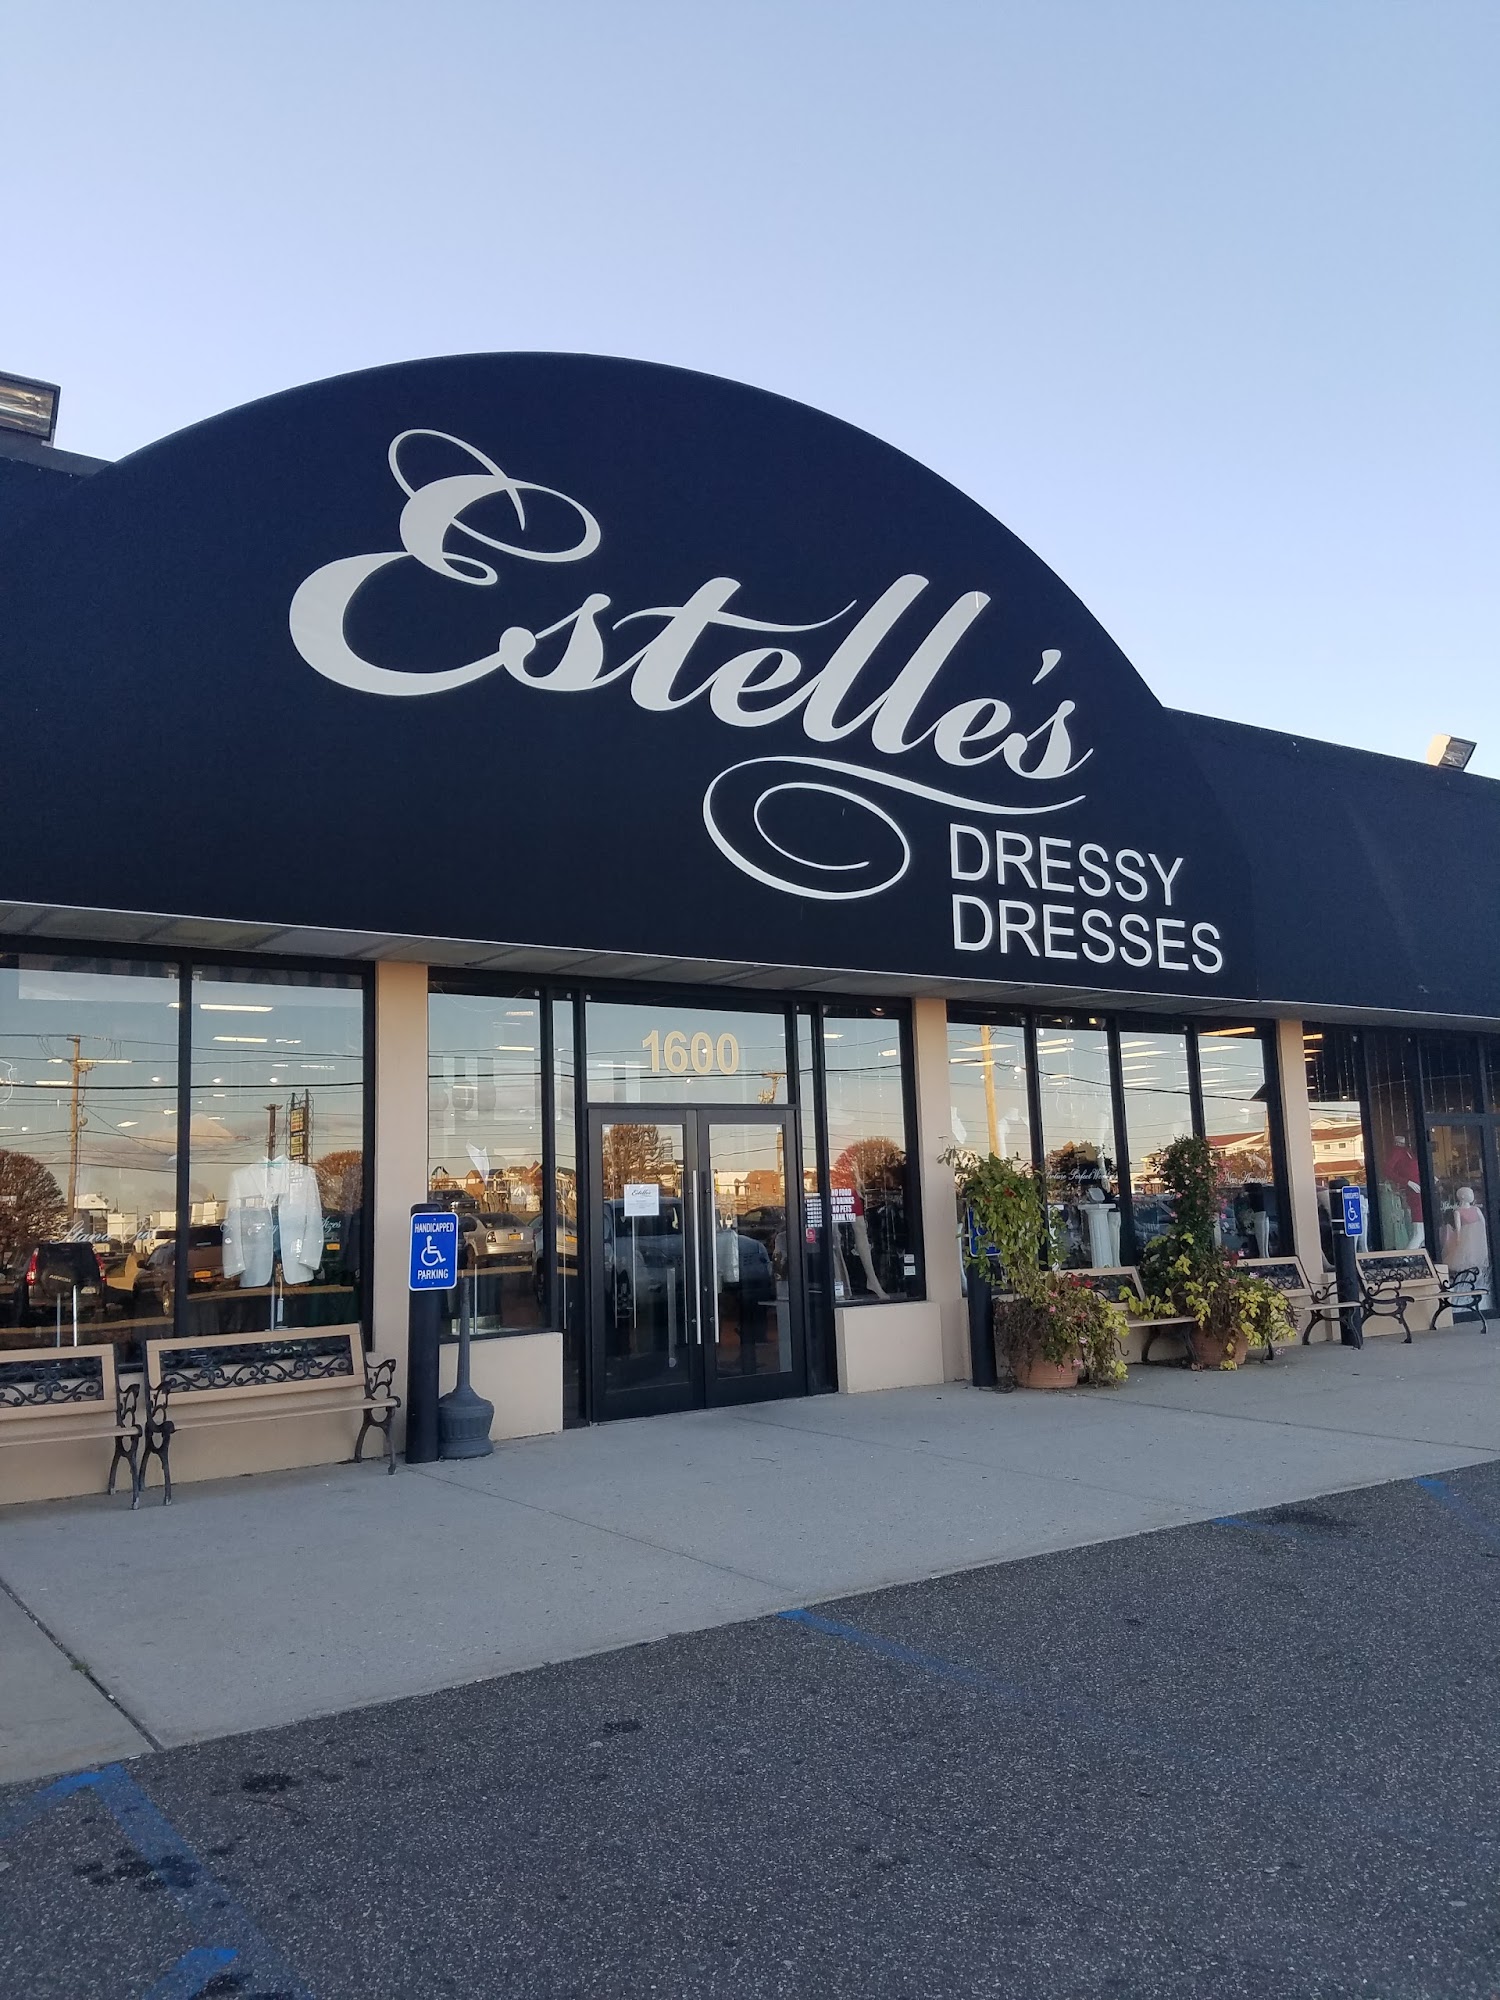 Estelle's Dressy Dresses